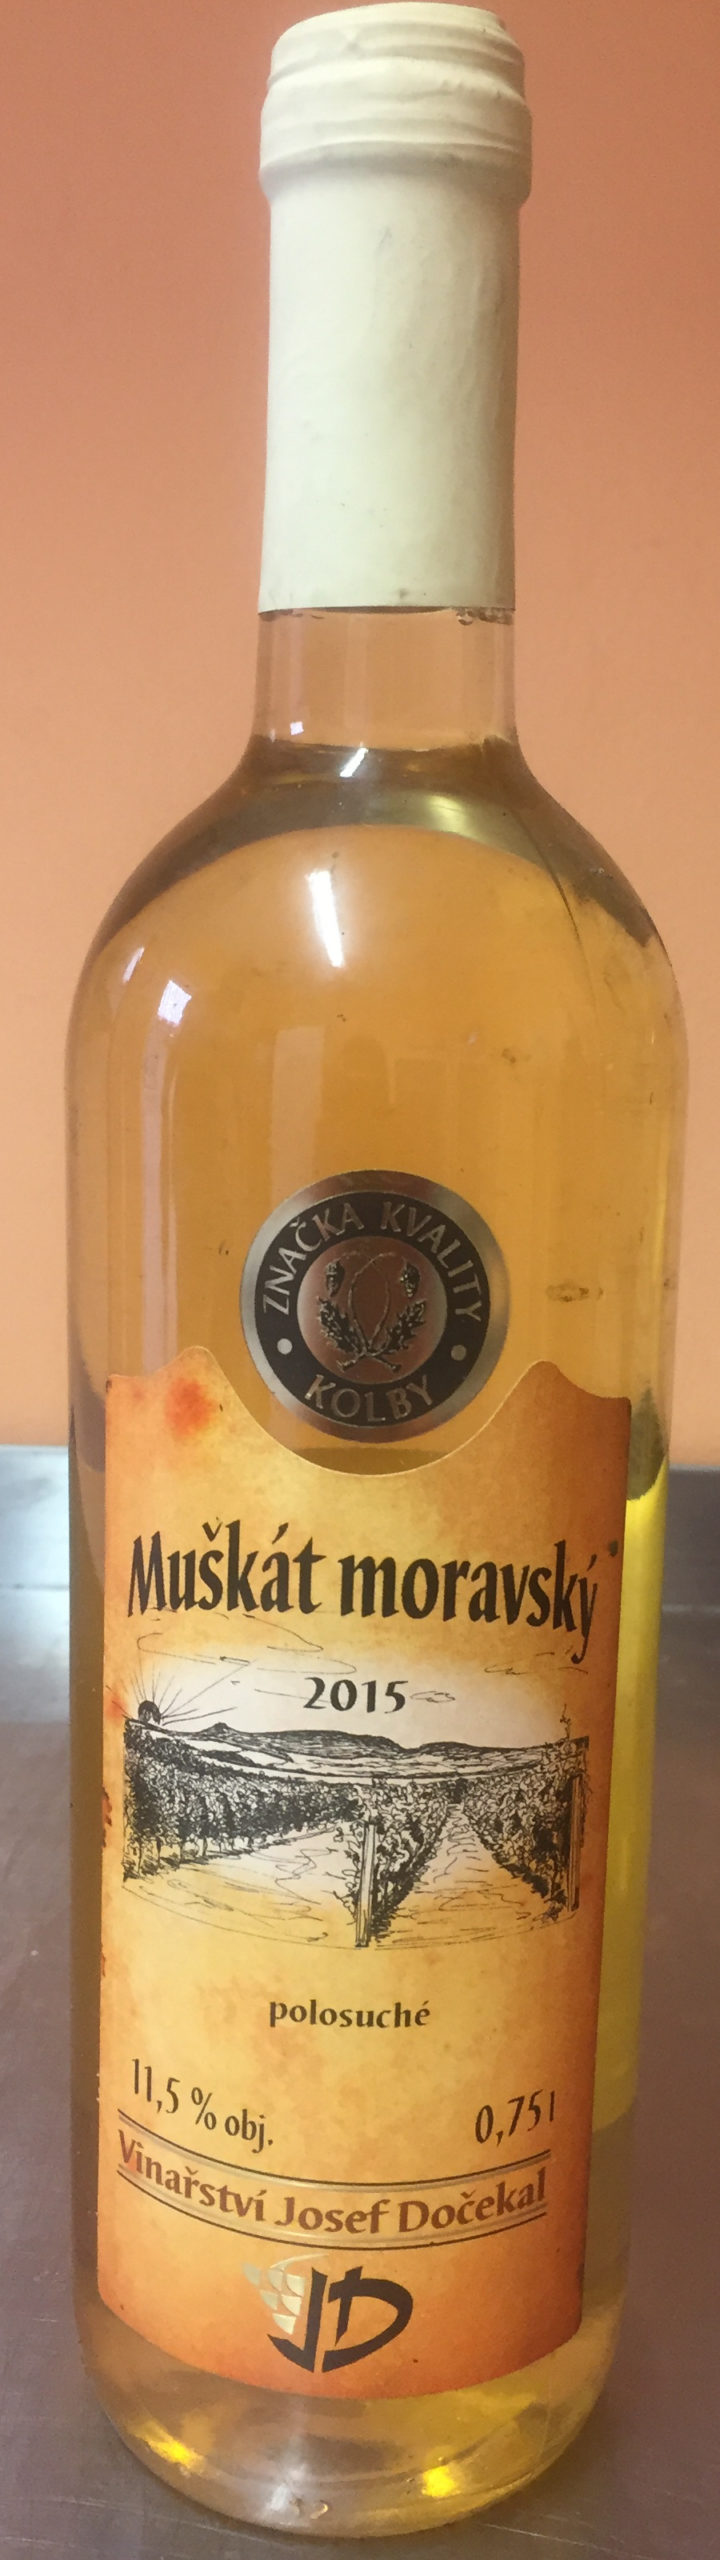 Muškát moravský 2015